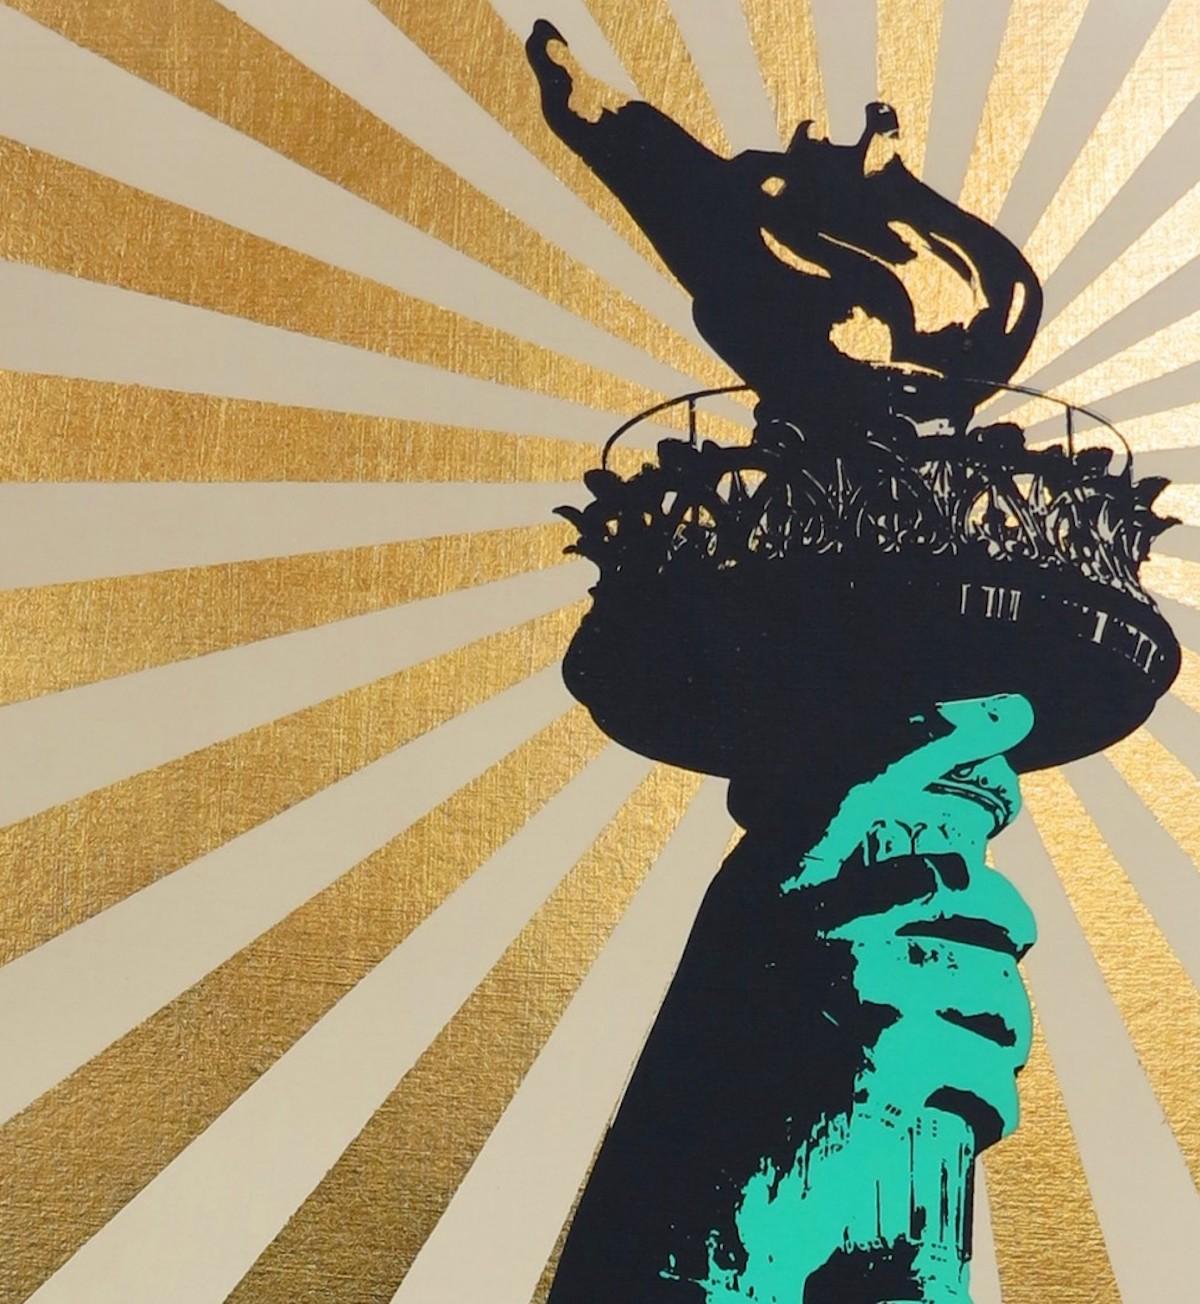 Sweet Land of Liberty ist ein Siebdruck in limitierter Auflage auf archiviertem Museumskarton mit handaufgetragenem Blattgold von Jayson Lilley.
Jayson Lilley ist online und in unserer Galerie bei Wychwood Art erhältlich. Der zeitgenössische